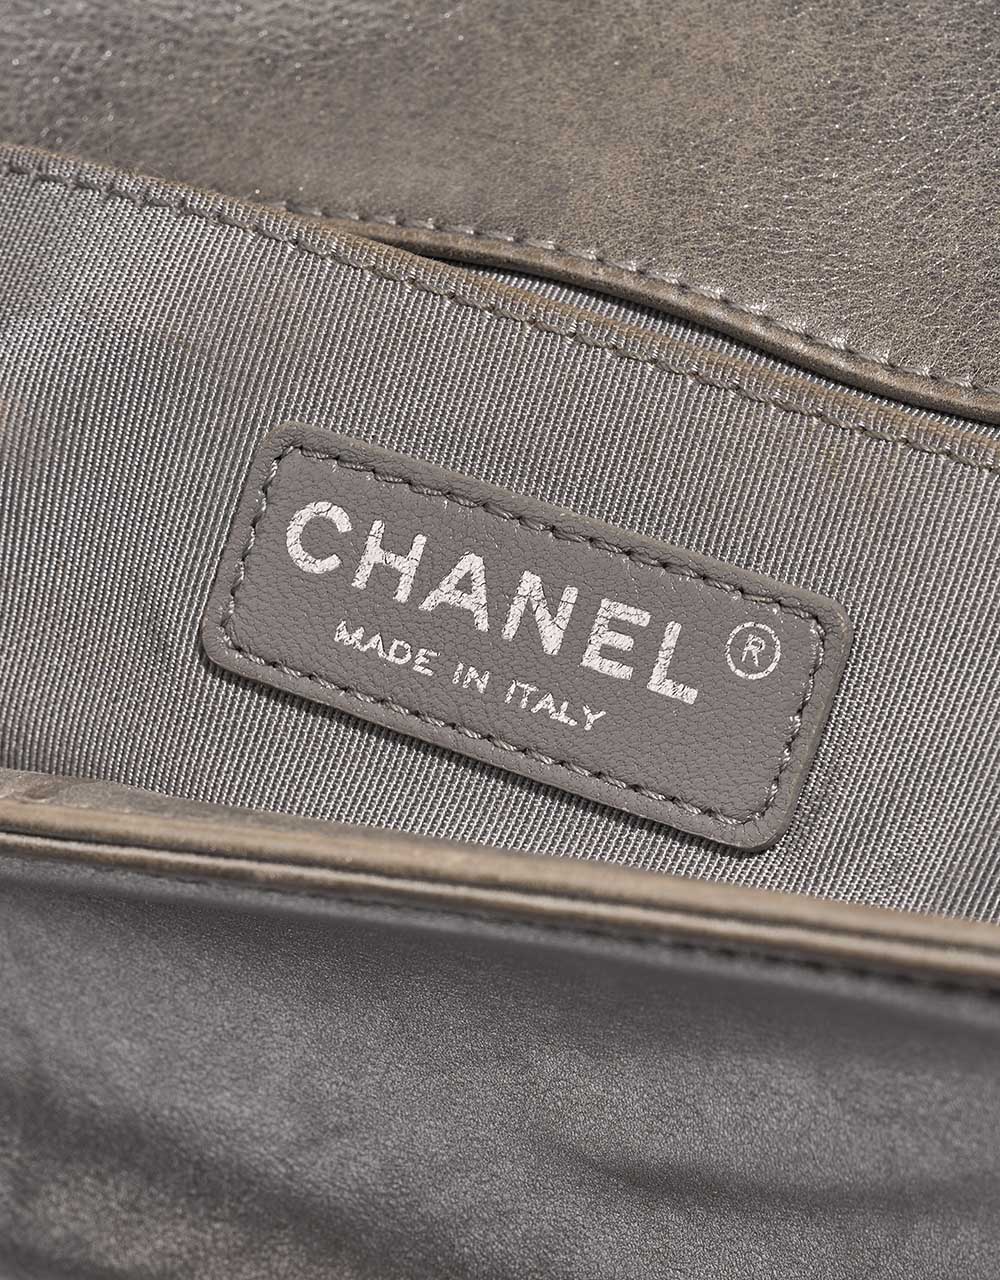 Chanel Boy NewMedium Silver Logo | Verkaufen Sie Ihre Designer-Tasche auf Saclab.com